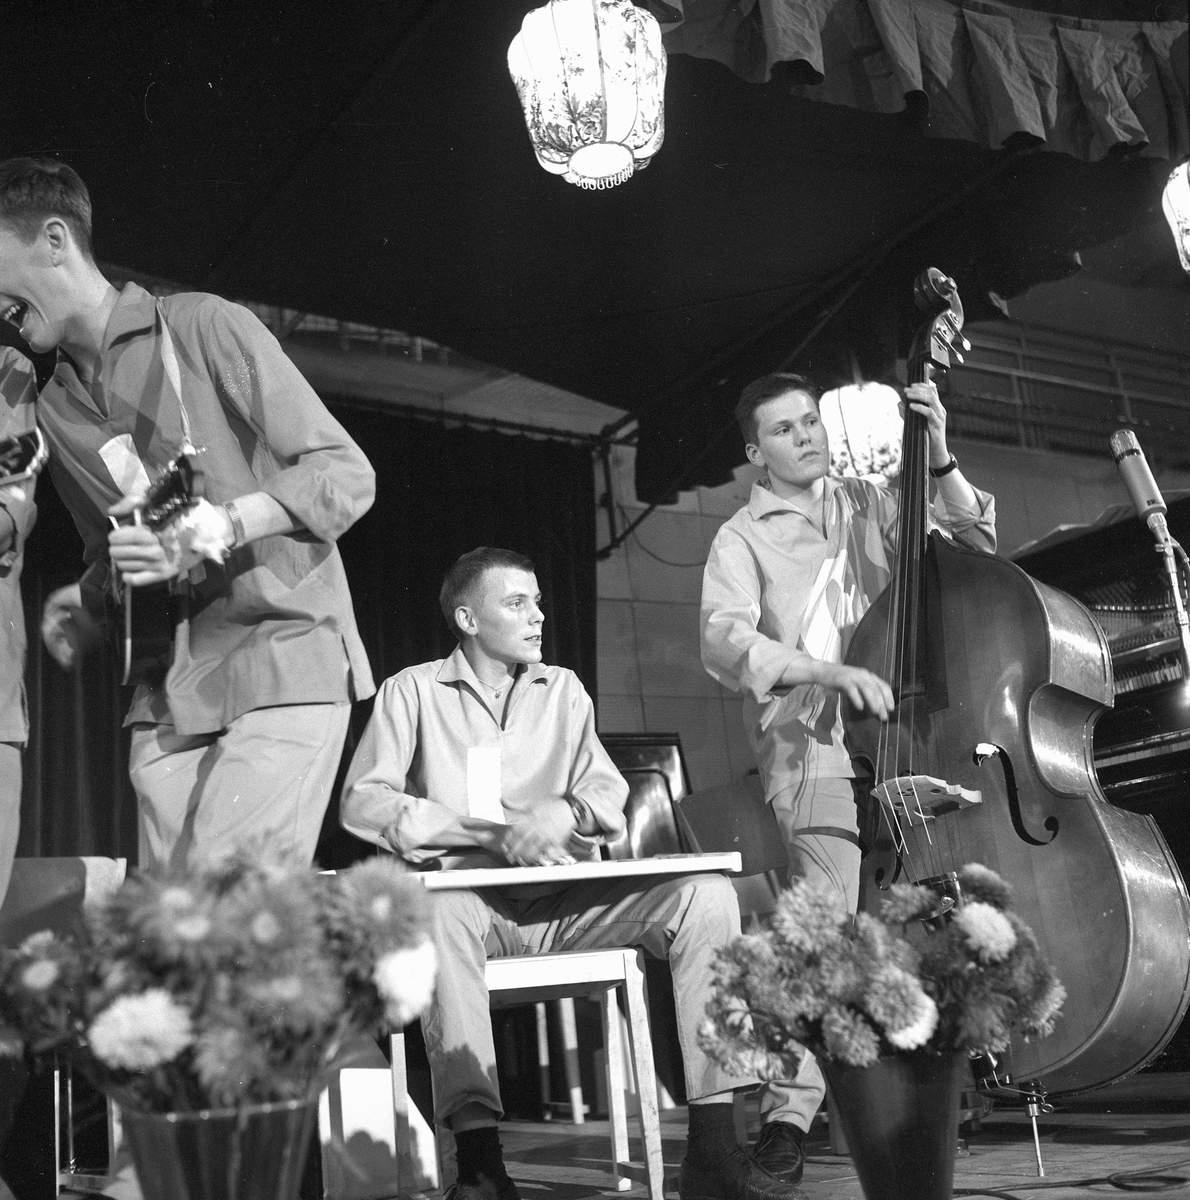 Danslekafton på fritiden.
29 september 1958.